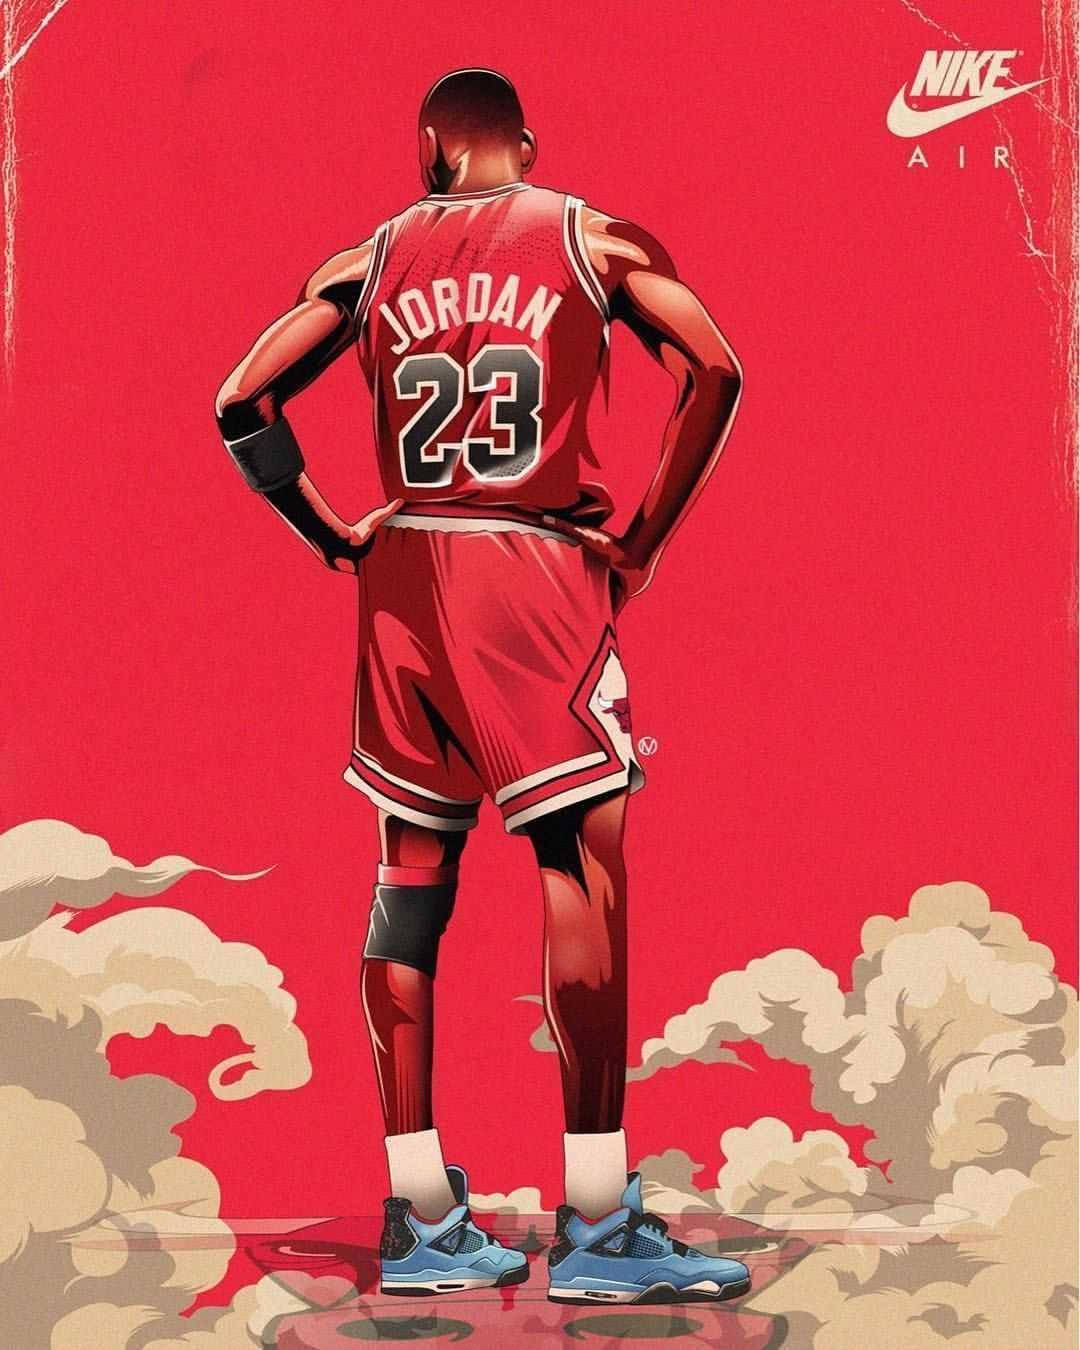 Cool Nike Air Michael Jordan Art Wallpaper